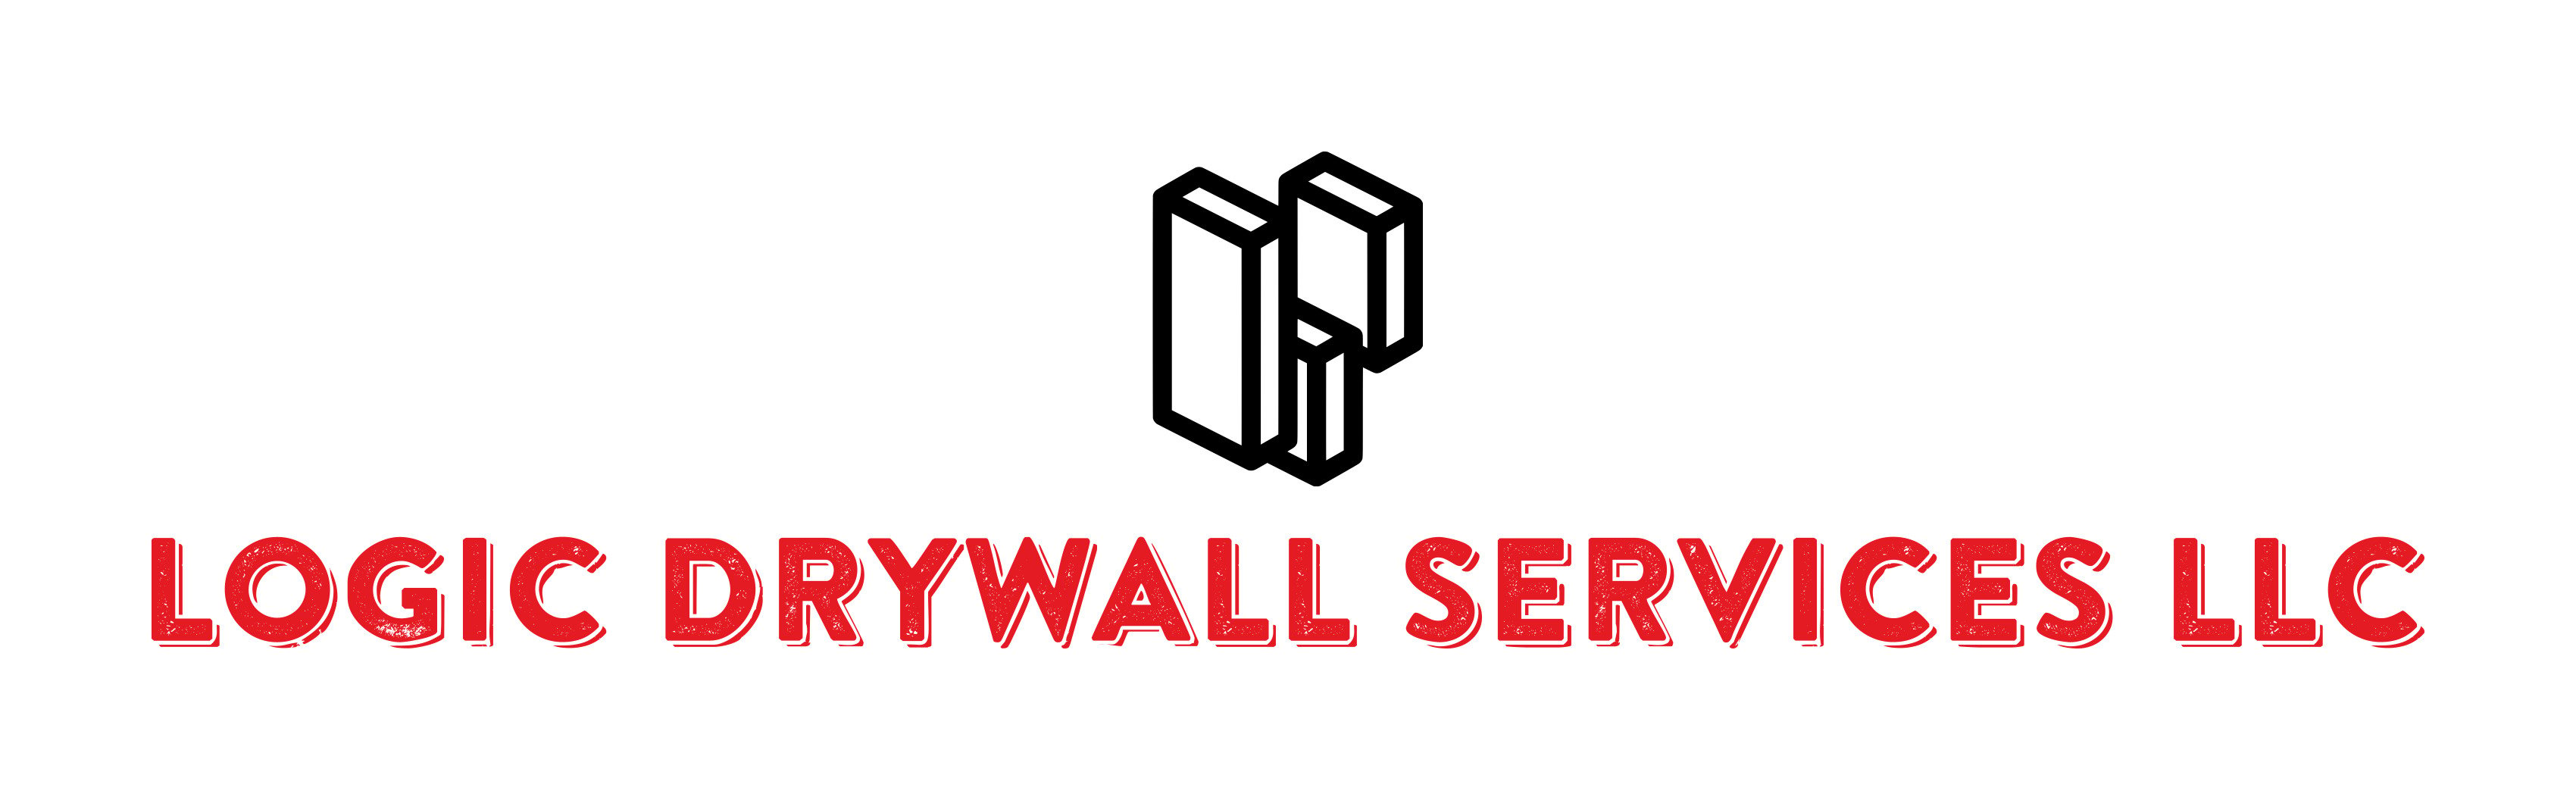 Logic Drywall Services LLC Logo